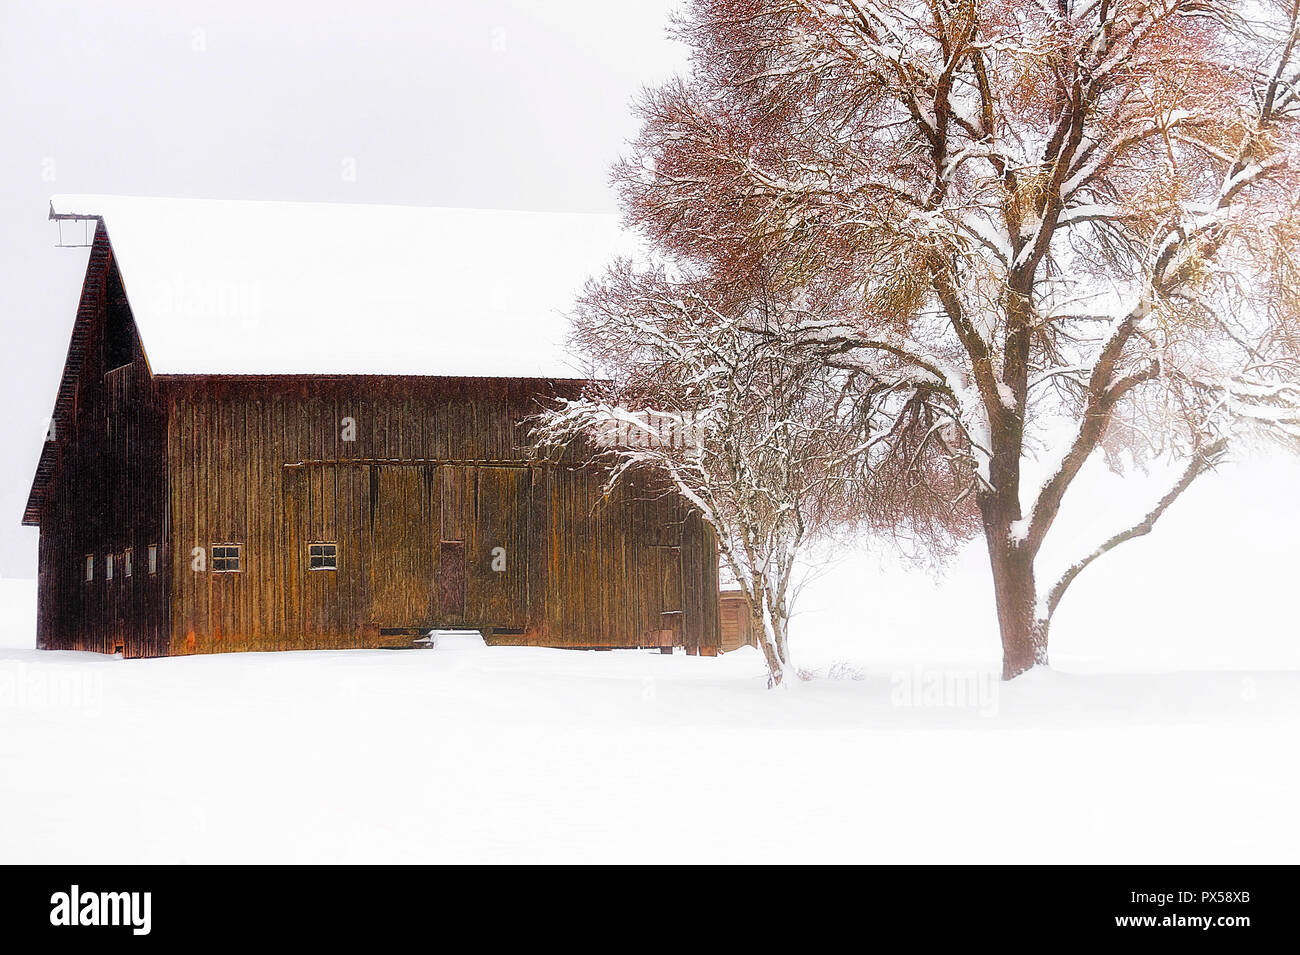 Schnee fällt in diesem schönen Land, einer Scheune und einem Reifen Schwingen an einem Baum befestigt. Stockfoto